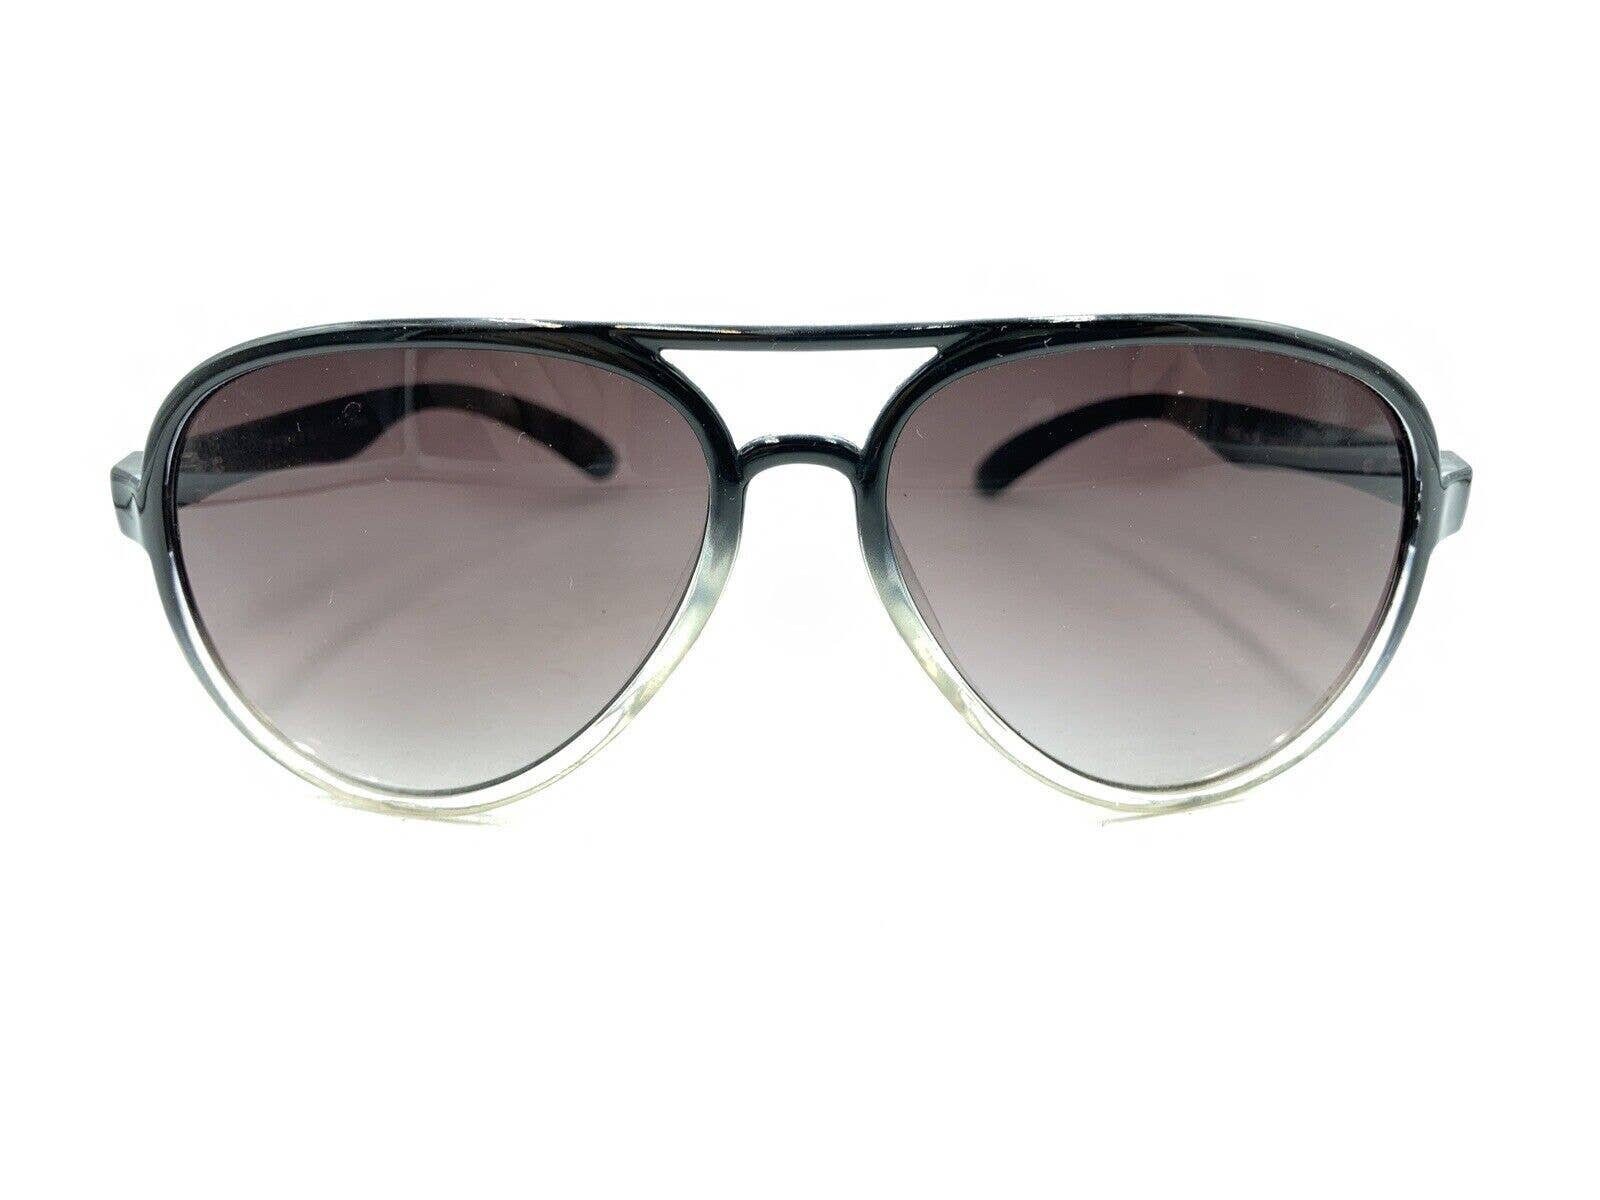 Perry Ellis PESUN059-2 Black Clear Fade Aviator Sunglasses Purple